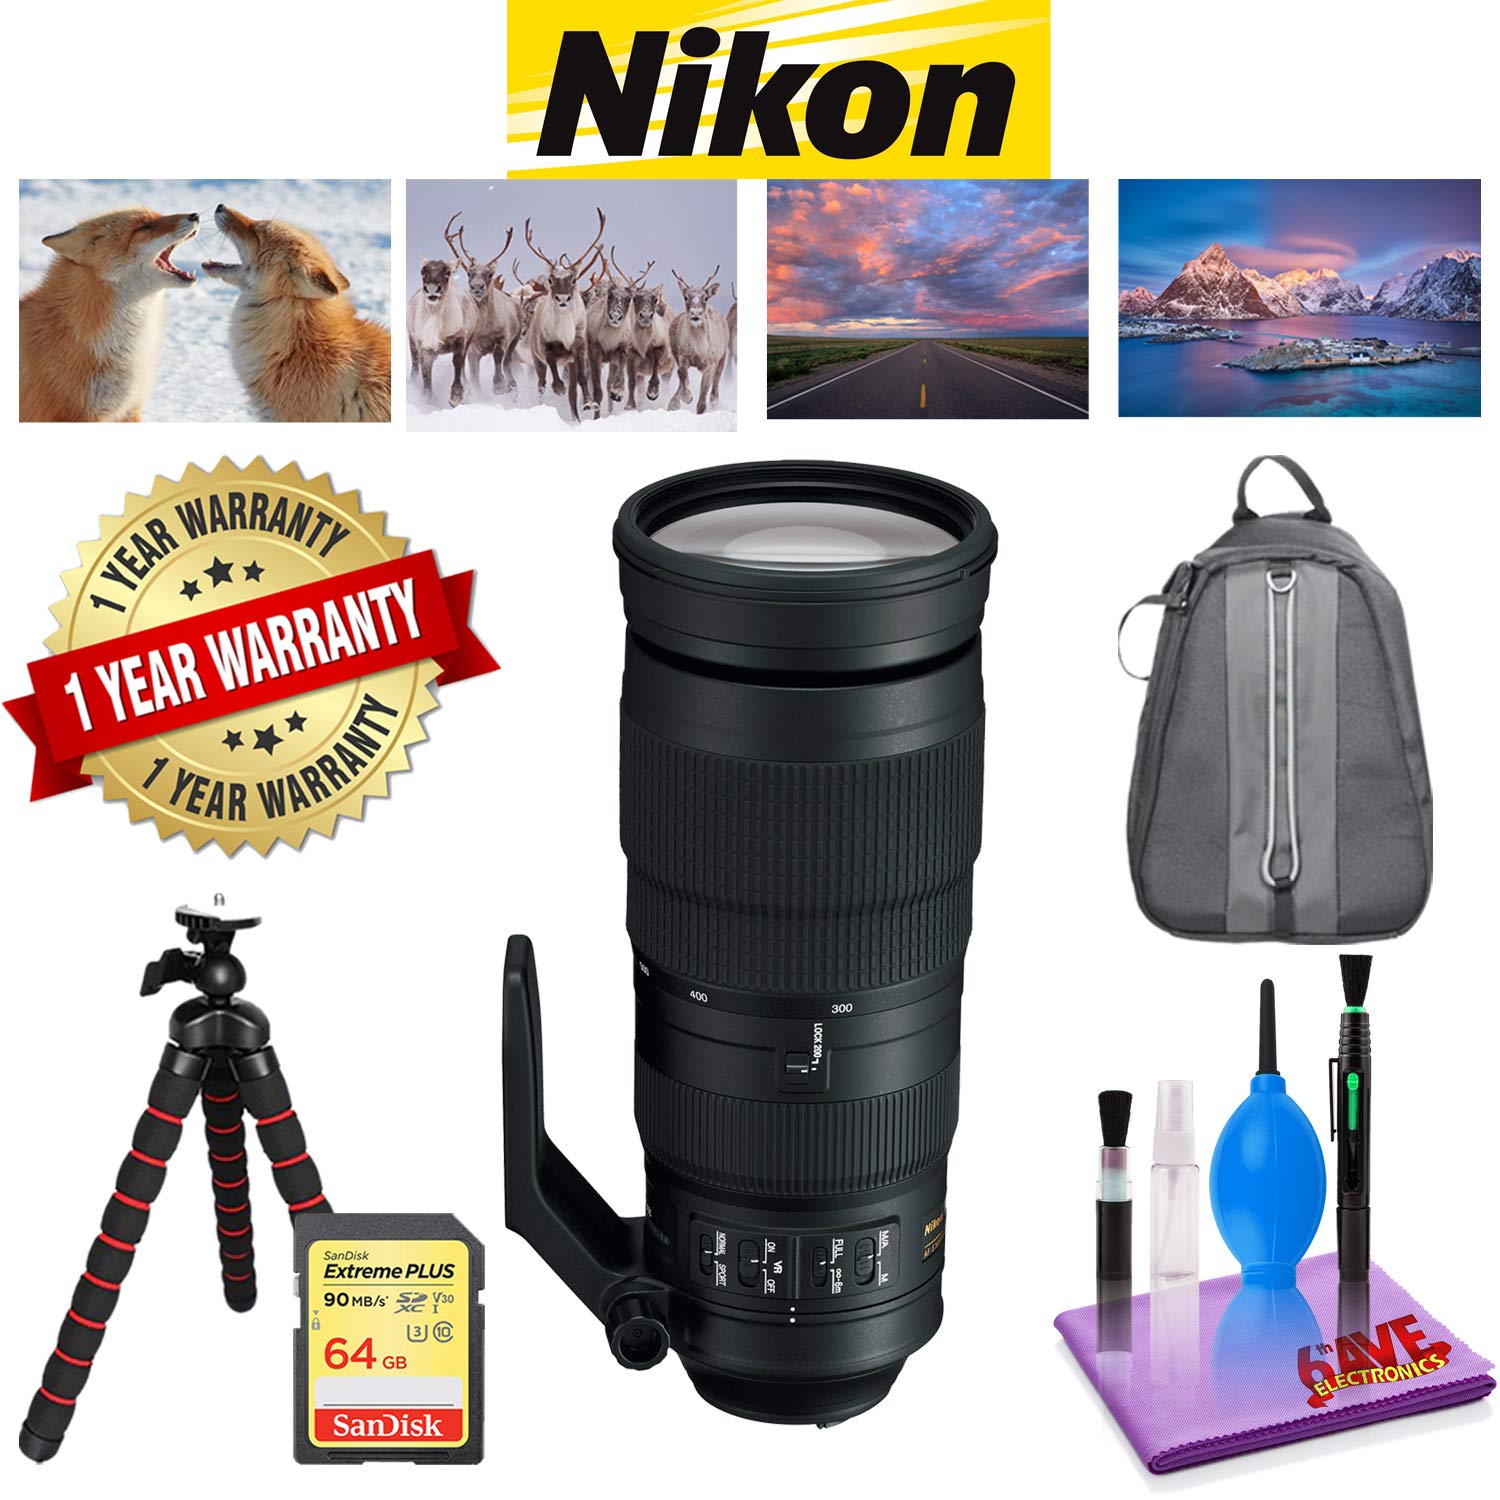 Nikon AF-S NIKKOR 200-500mm f/5.6E ED VR Lens with 1 Year Warranty, Sandisk 64 GB Memory Card, Deluxe Backpack for Camer